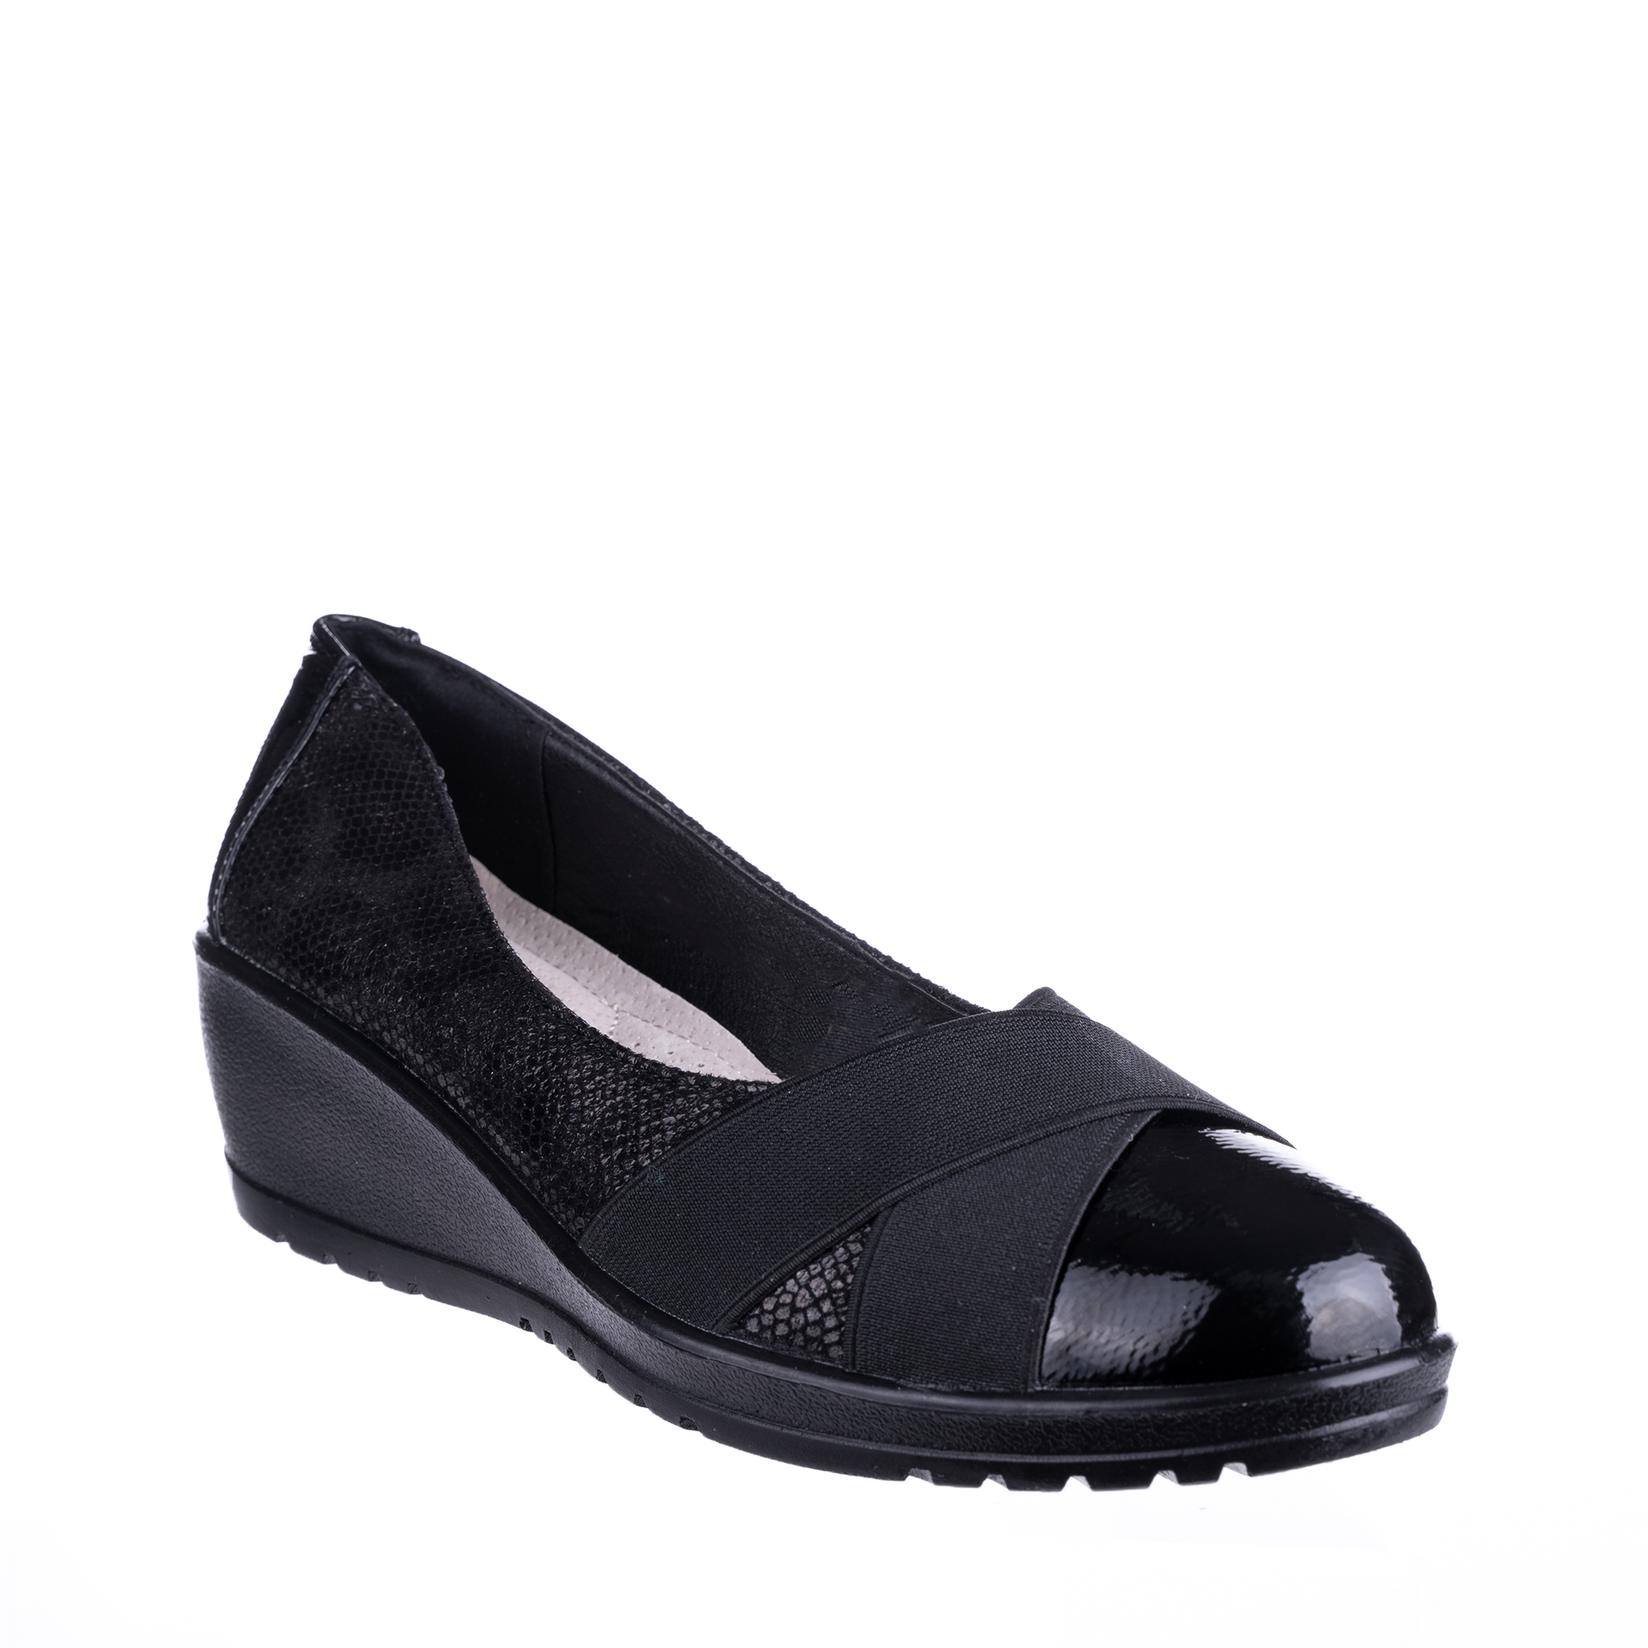 COMFORT BY ELLY SHOES Ženske cipele N76208, Crne